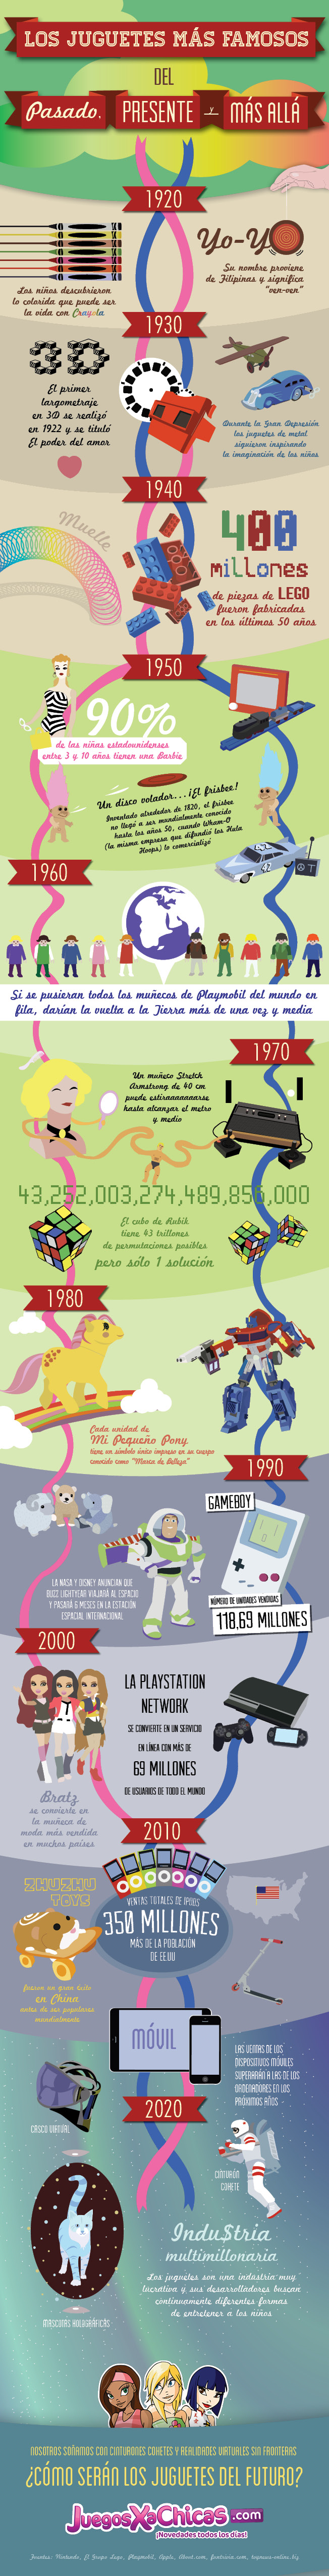 historia de los juguetes